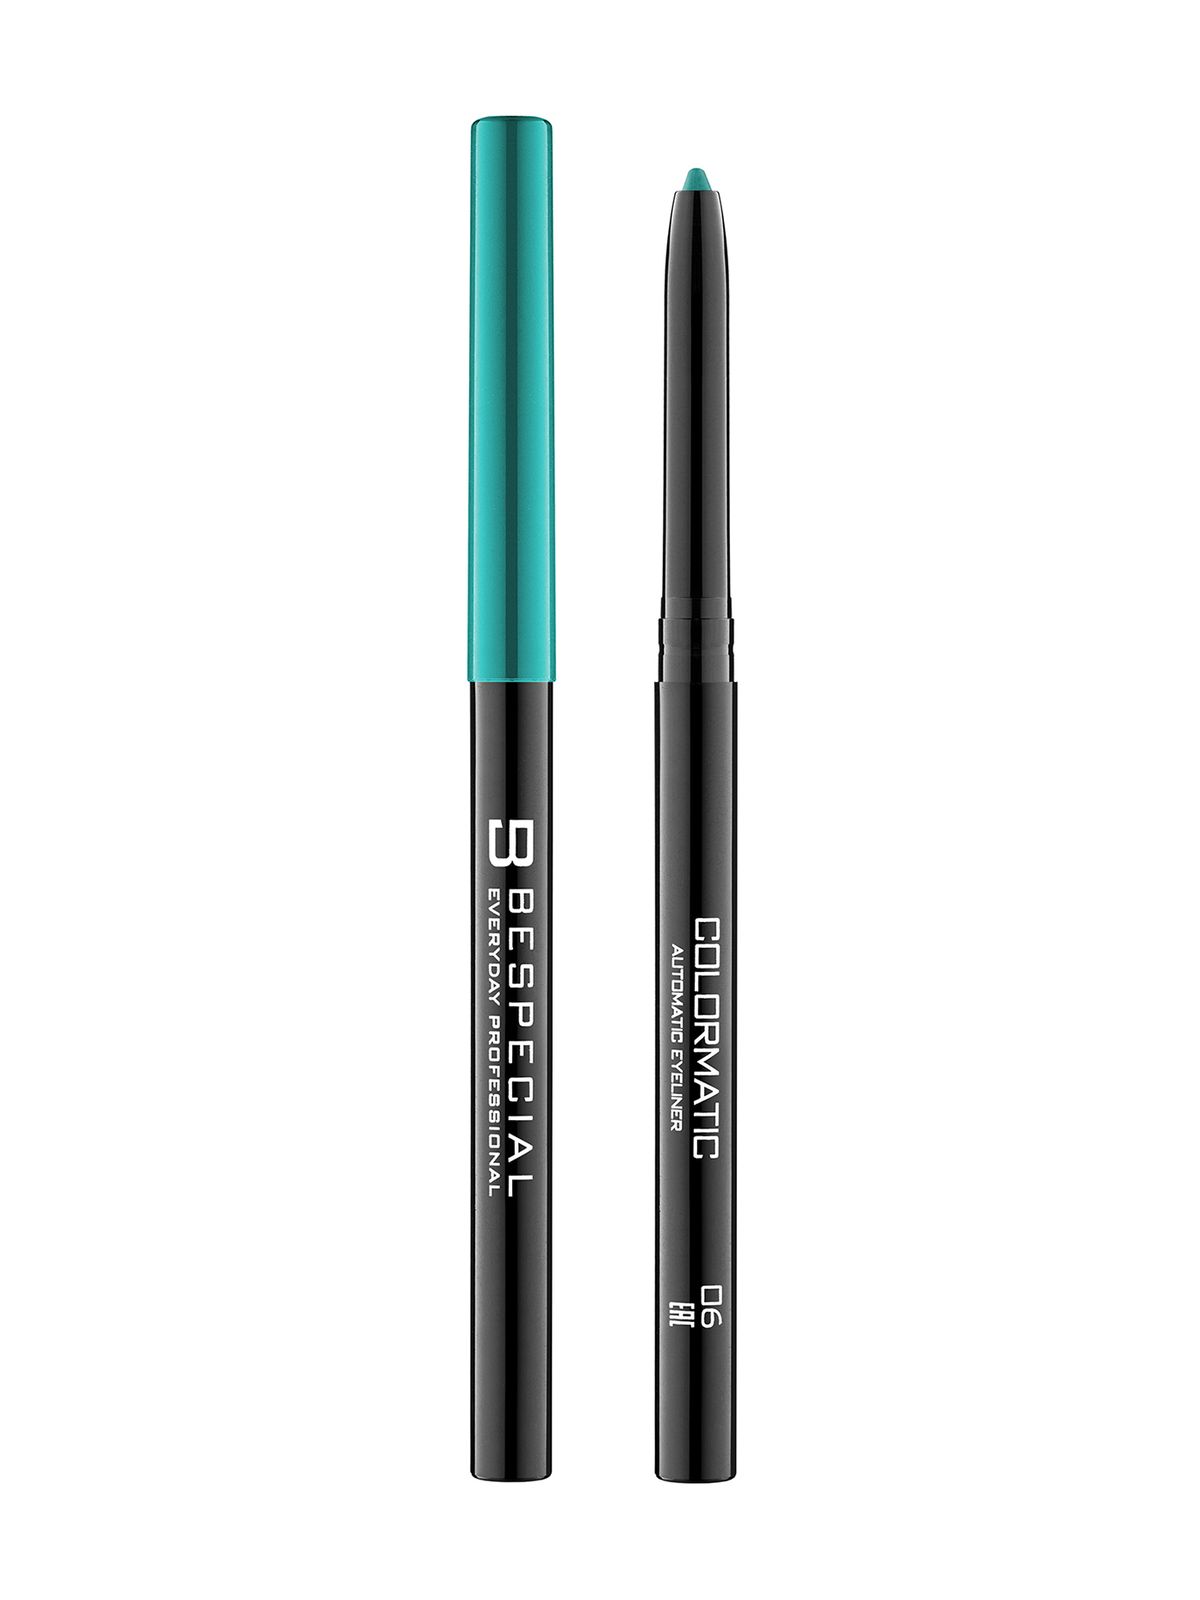 Механический карандаш для глаз Bespecial Colormatic Eye Pencil bellezzetta карандаш каял для глаз устойчивый гелевый контурный